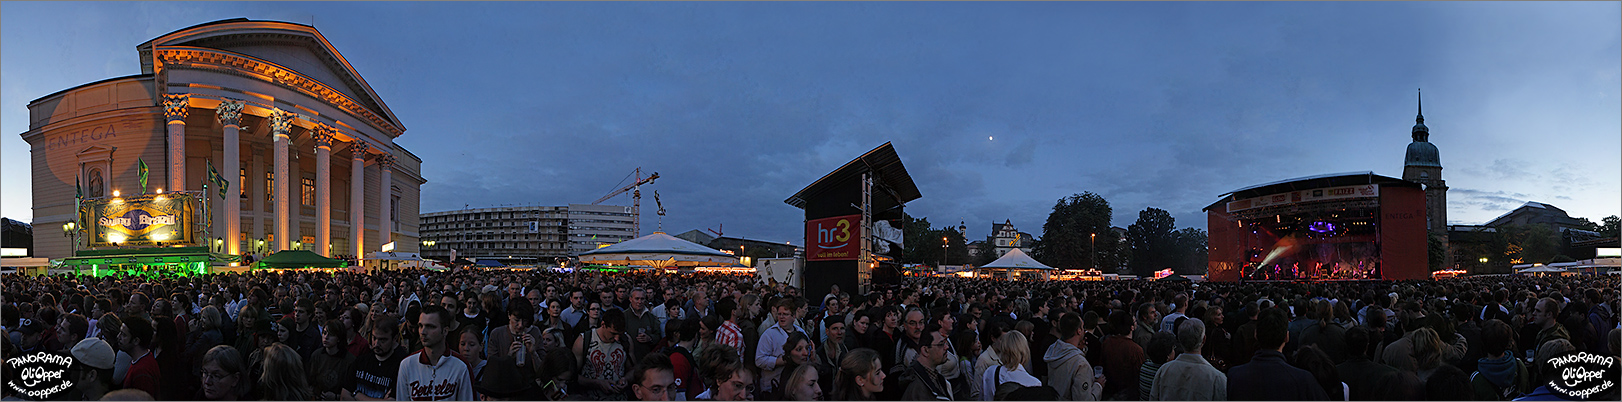 Darmstadt - Schlossgrabenfest 2007 - (c) by Oliver Opper